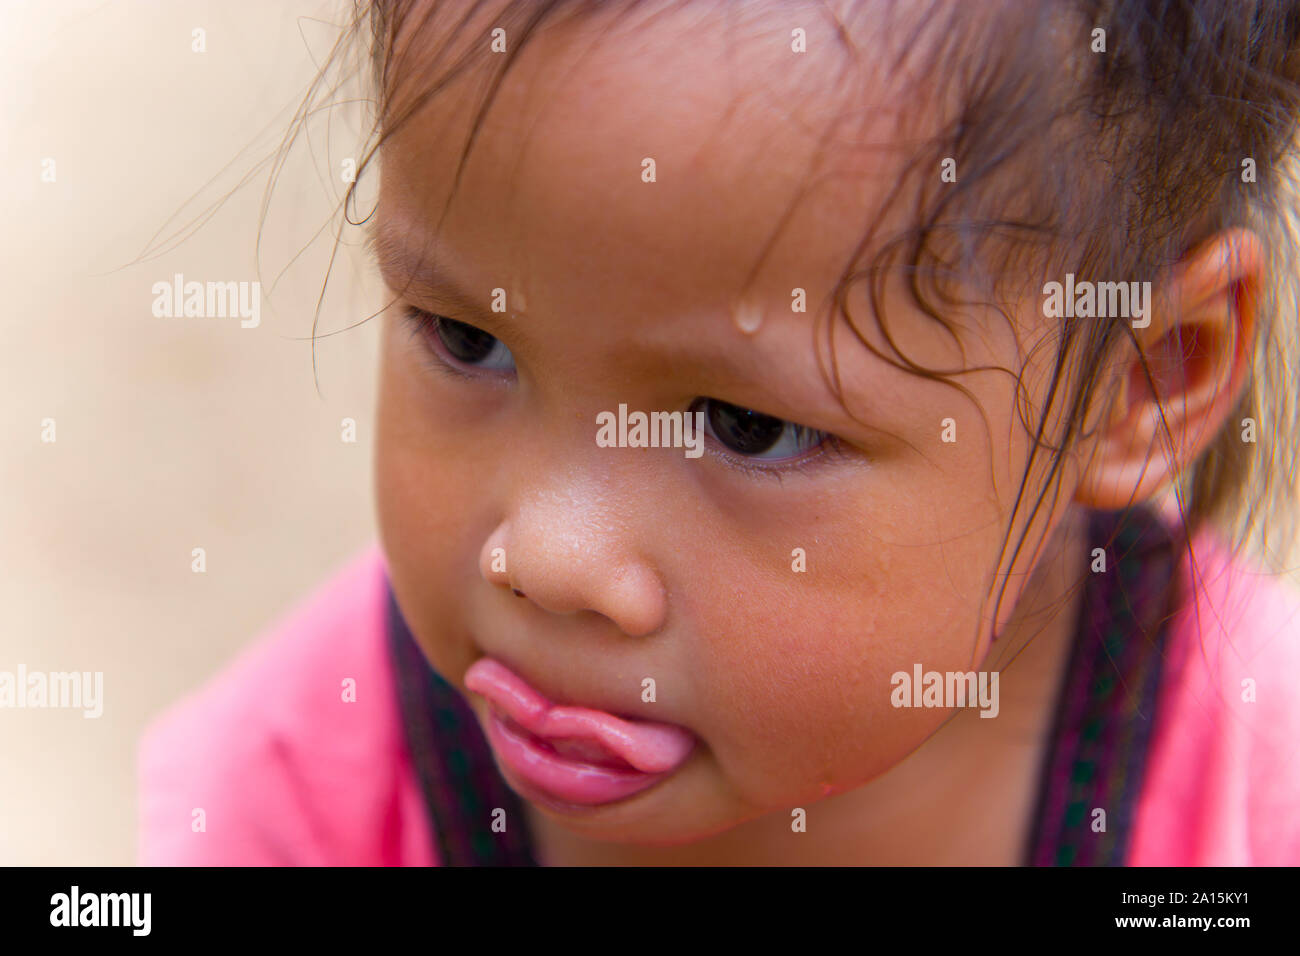 Der Toddler Gesicht auf der Suche nach Etwas und verschwitzt auf ihrem Gesicht. Hochauflösende Bilder Galerie. Stockfoto